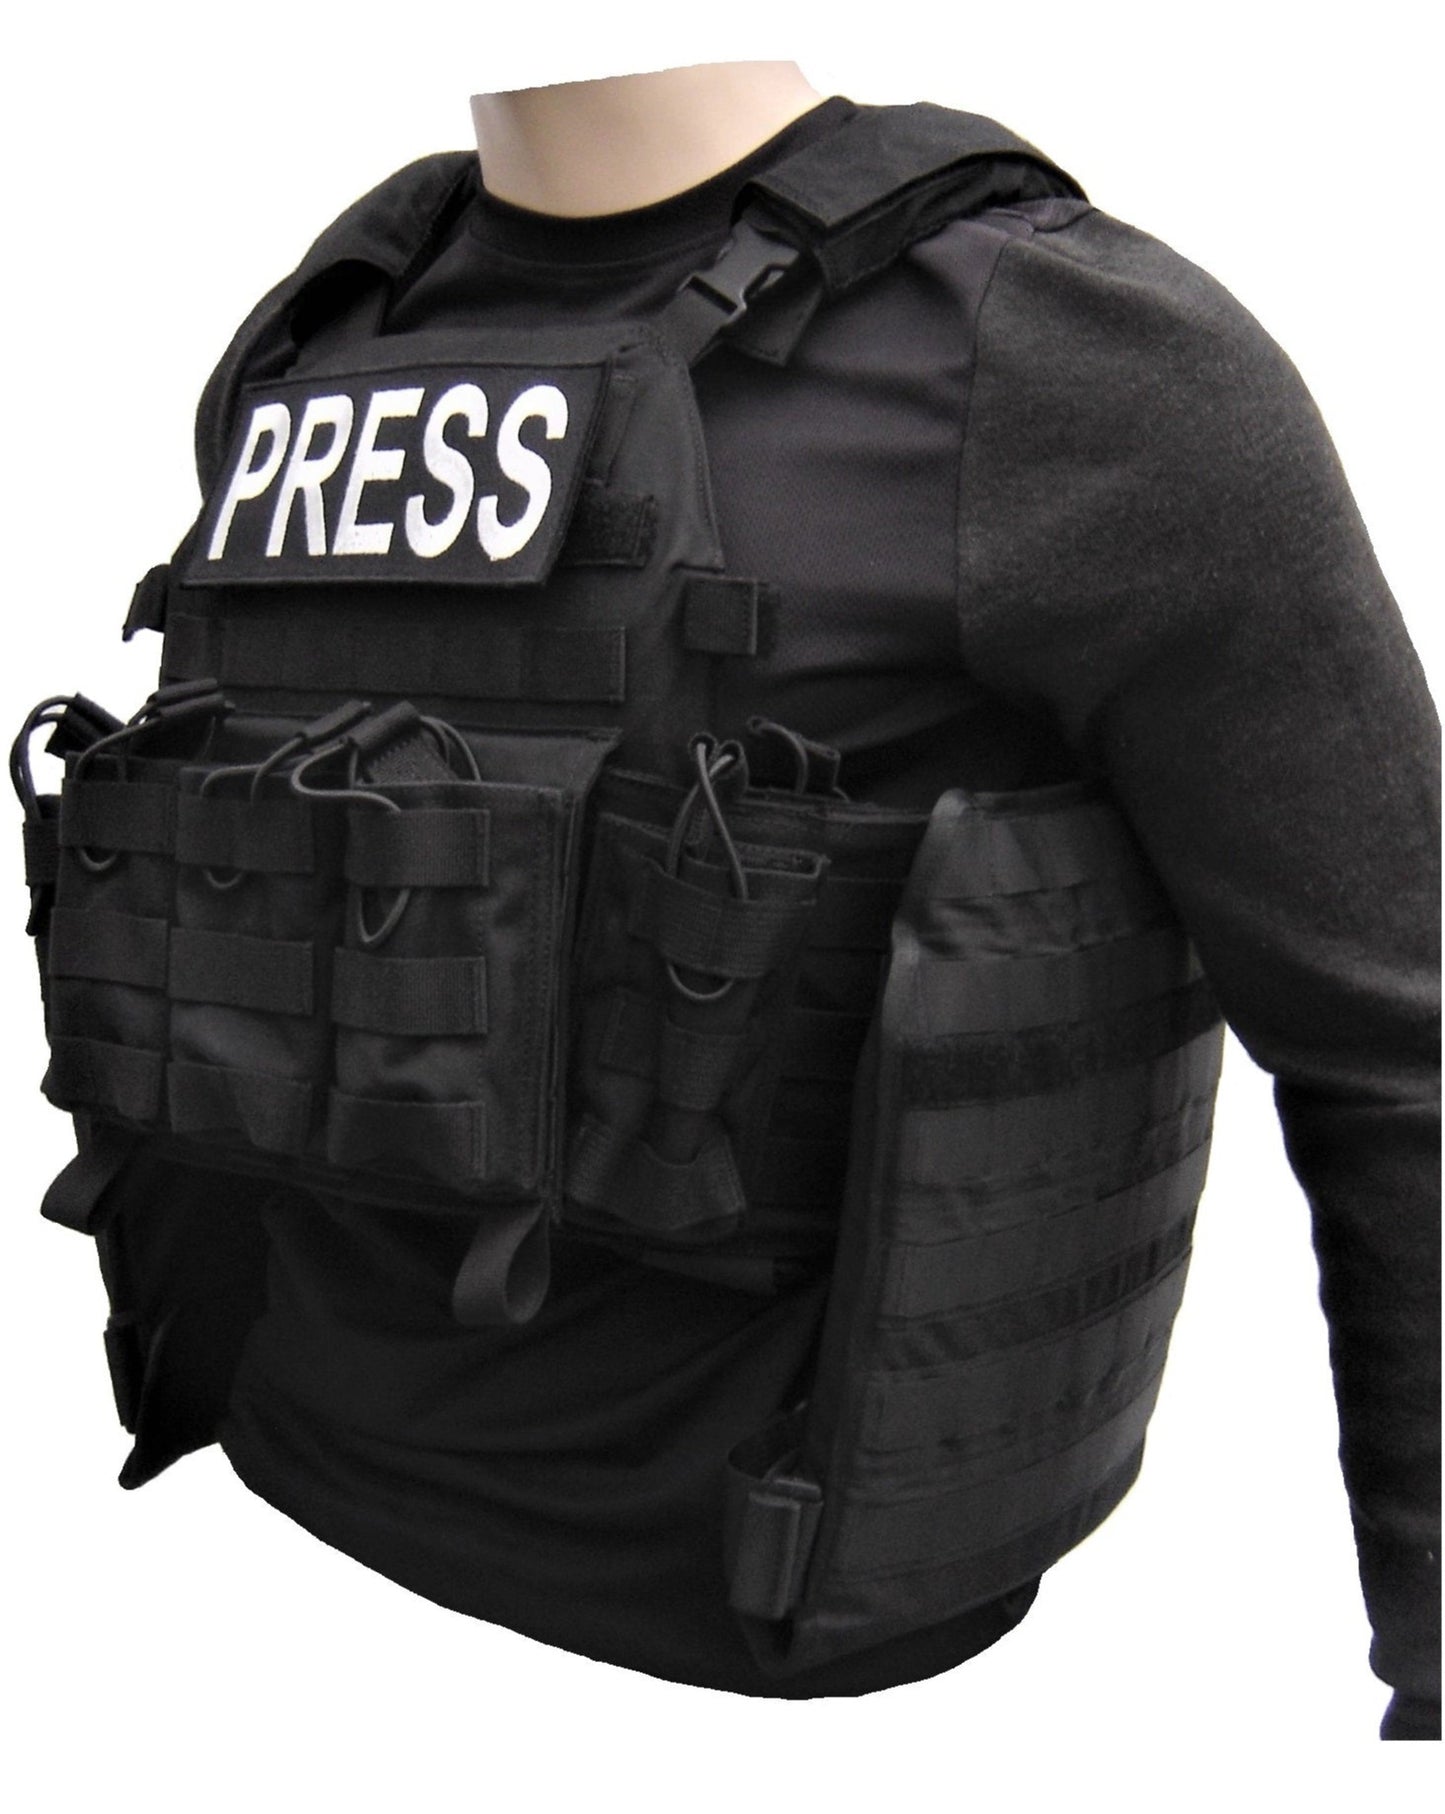 Bulletproof vest PRESS plate carrier 4 large side plates level IV